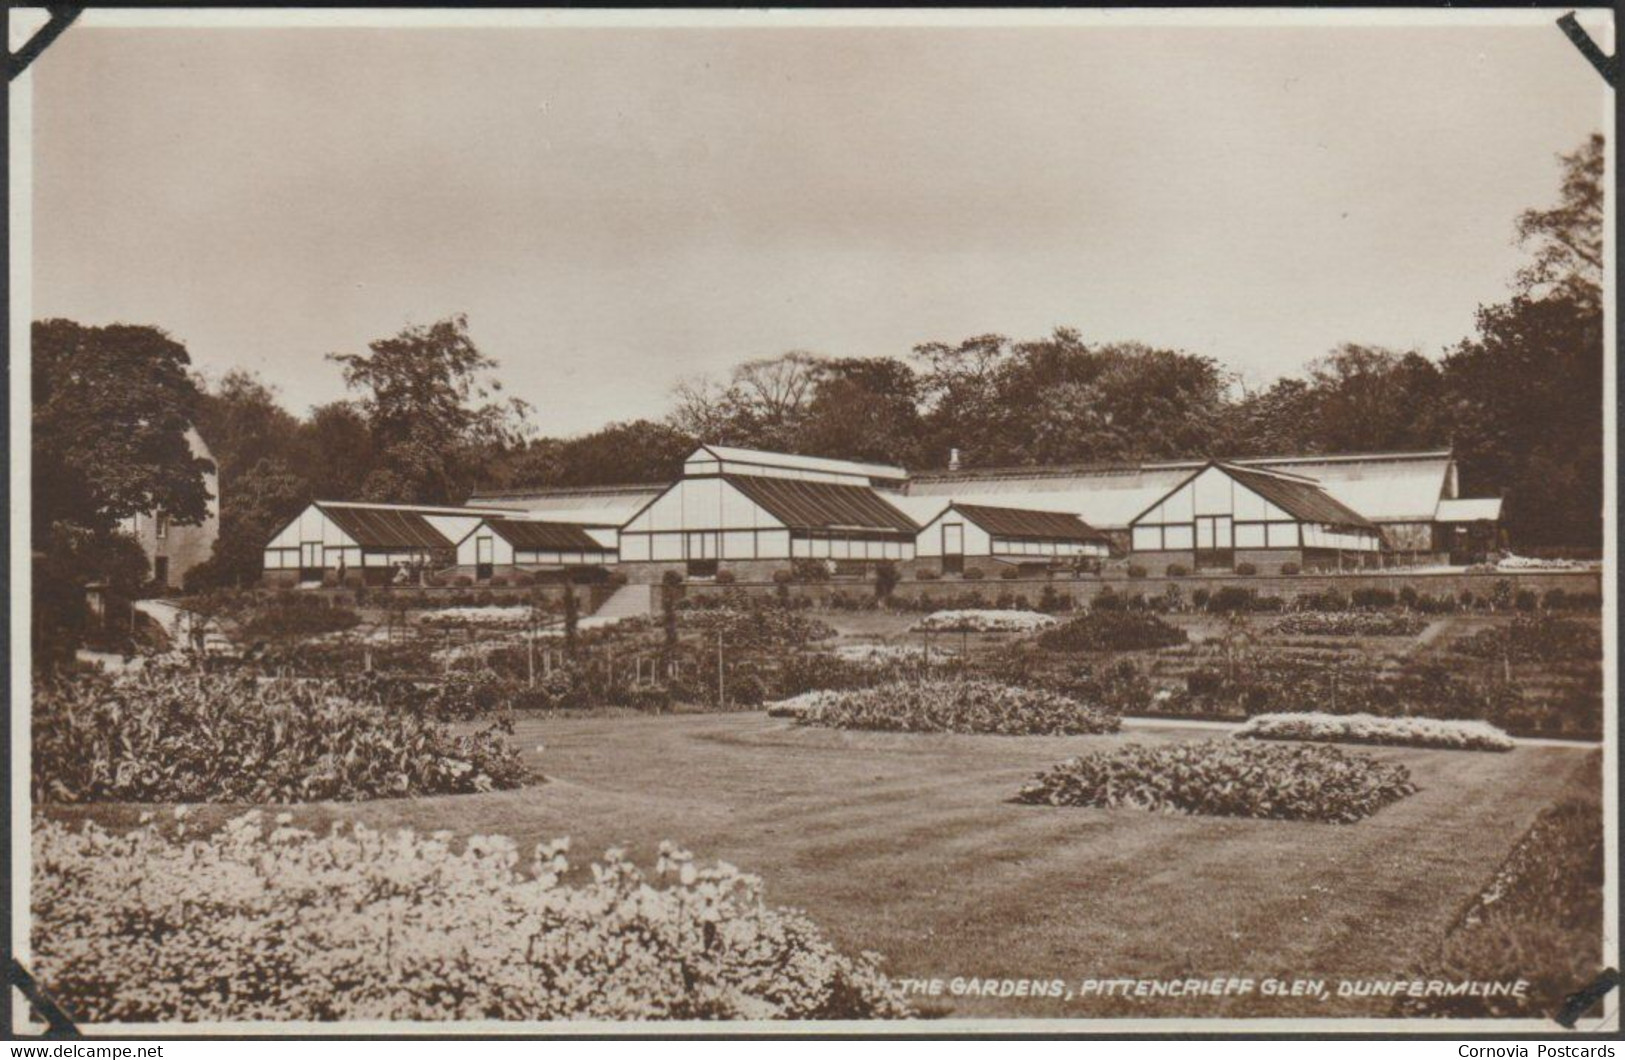 The Gardens, Pittencrieff Glen, Dunfermline, C.1910s - William Allan RP Postcard - Fife